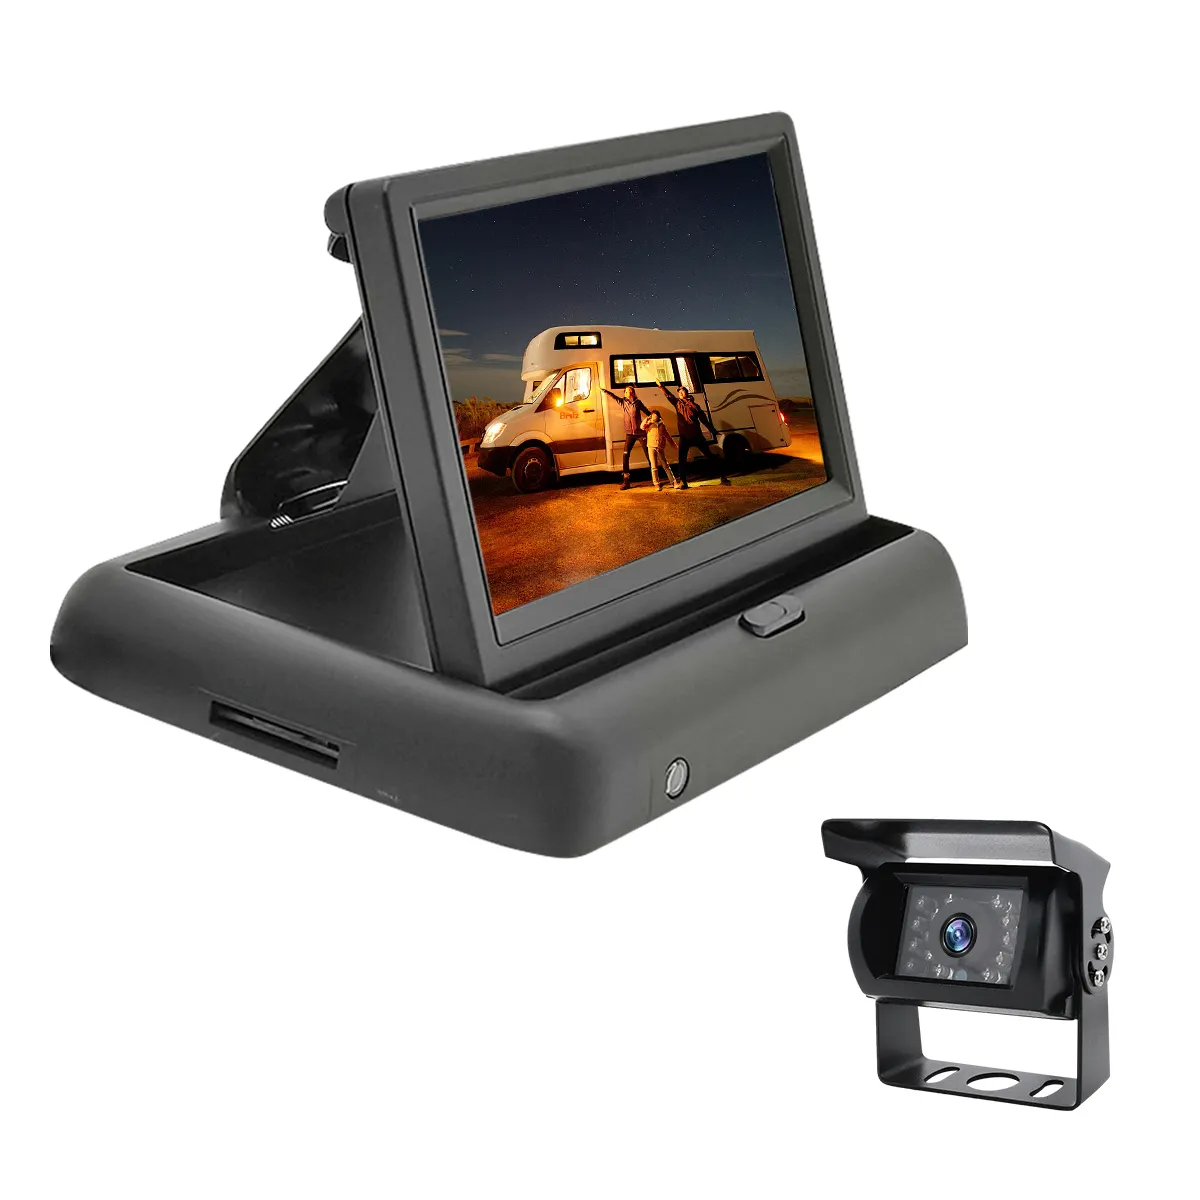 شاشة رقمية صغيرة LCD للسيارات والشاحنات بحجم 5 بوصة قابلة للطي والطي مزودة بنظام كاميرا